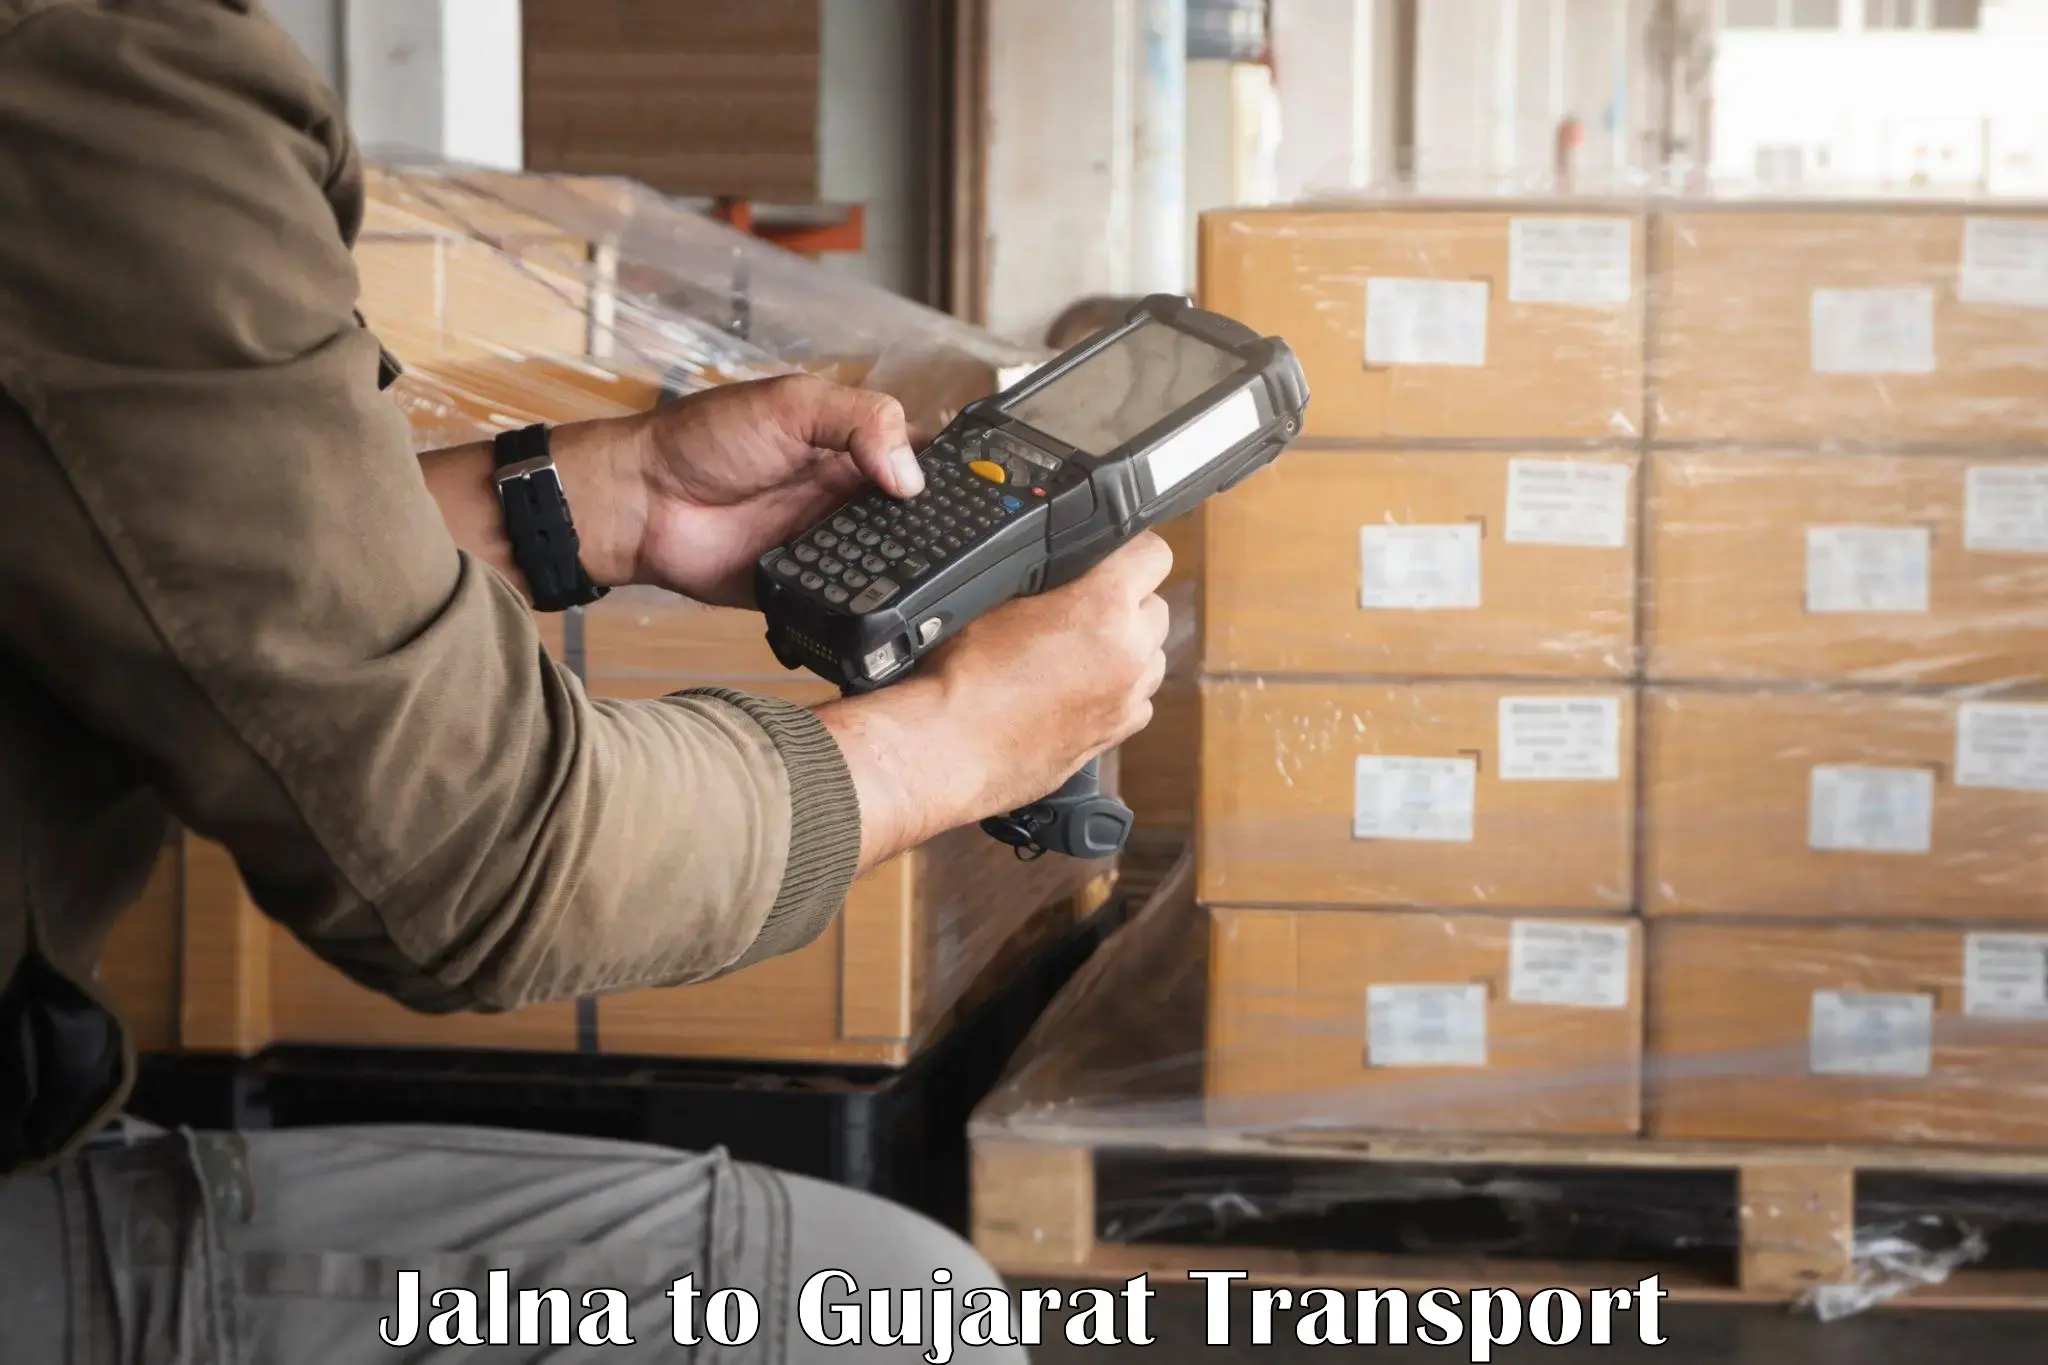 Daily transport service Jalna to Gujarat